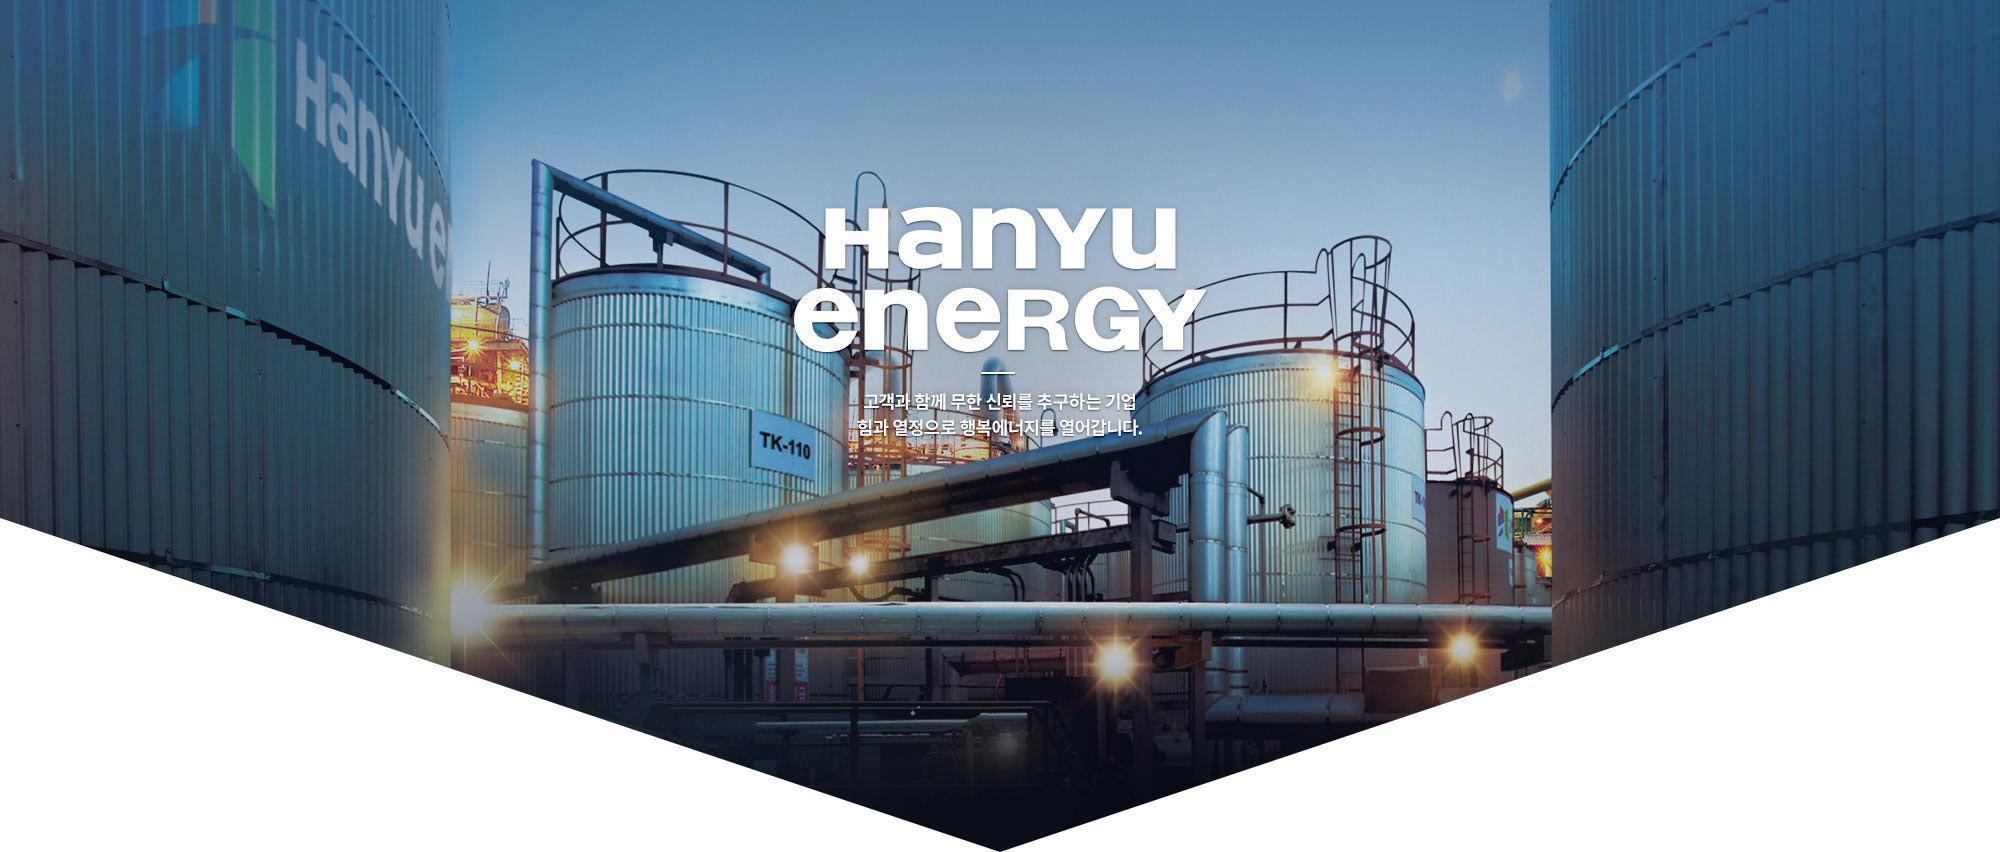 hanyu energy